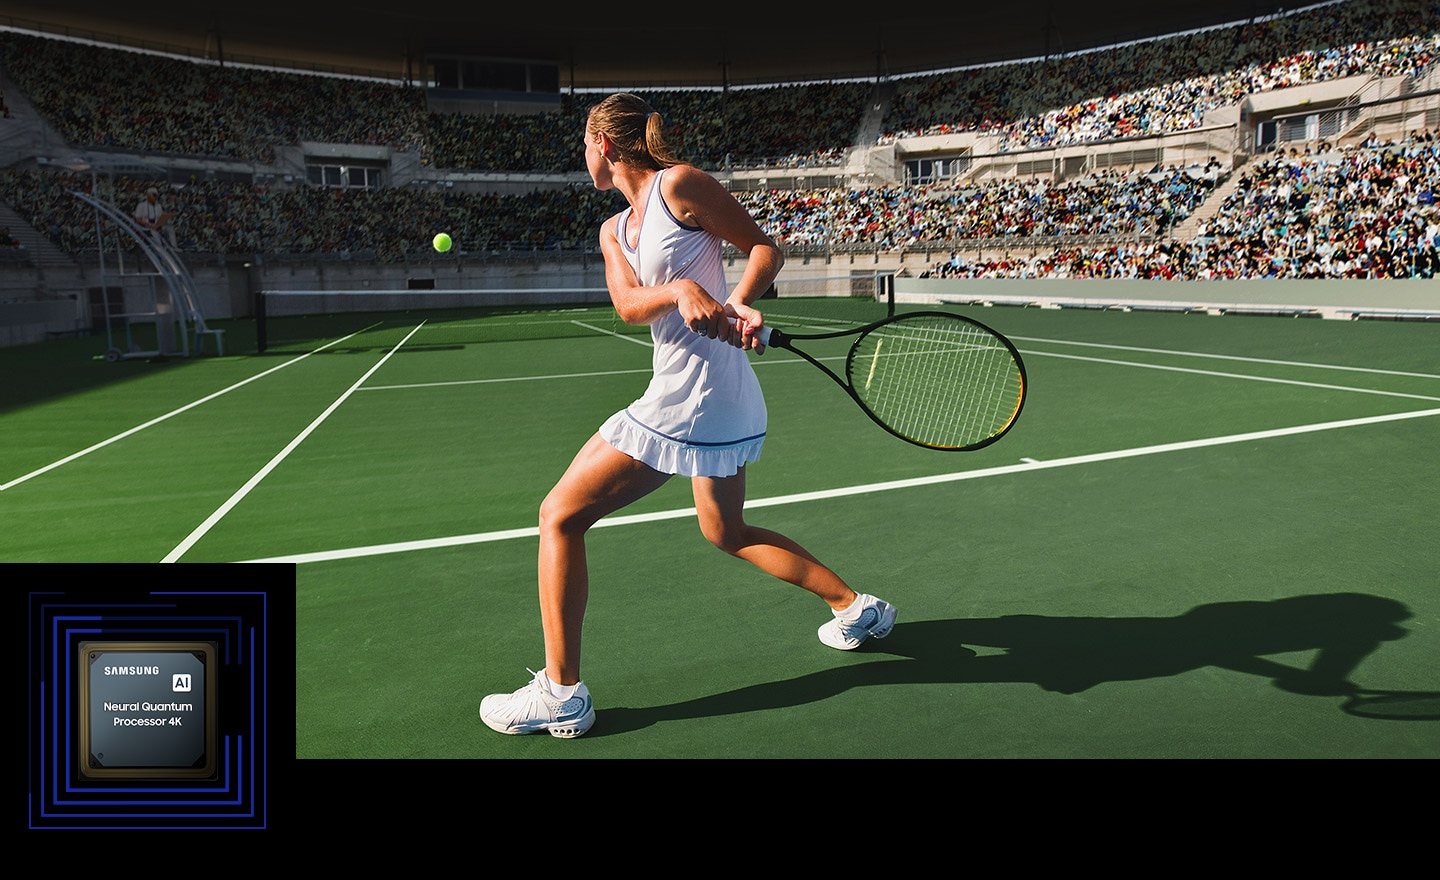 Na ekranie podświetlone są różne elementy meczu tenisowego, w tym piłka tenisowa, linie boczne kortu tenisowego, rakieta tenisowa i publiczność.  Pokazuje zdolność Samsung AI Neural Quantum Processor 4K do poprawy jakości w czasie rzeczywistym.